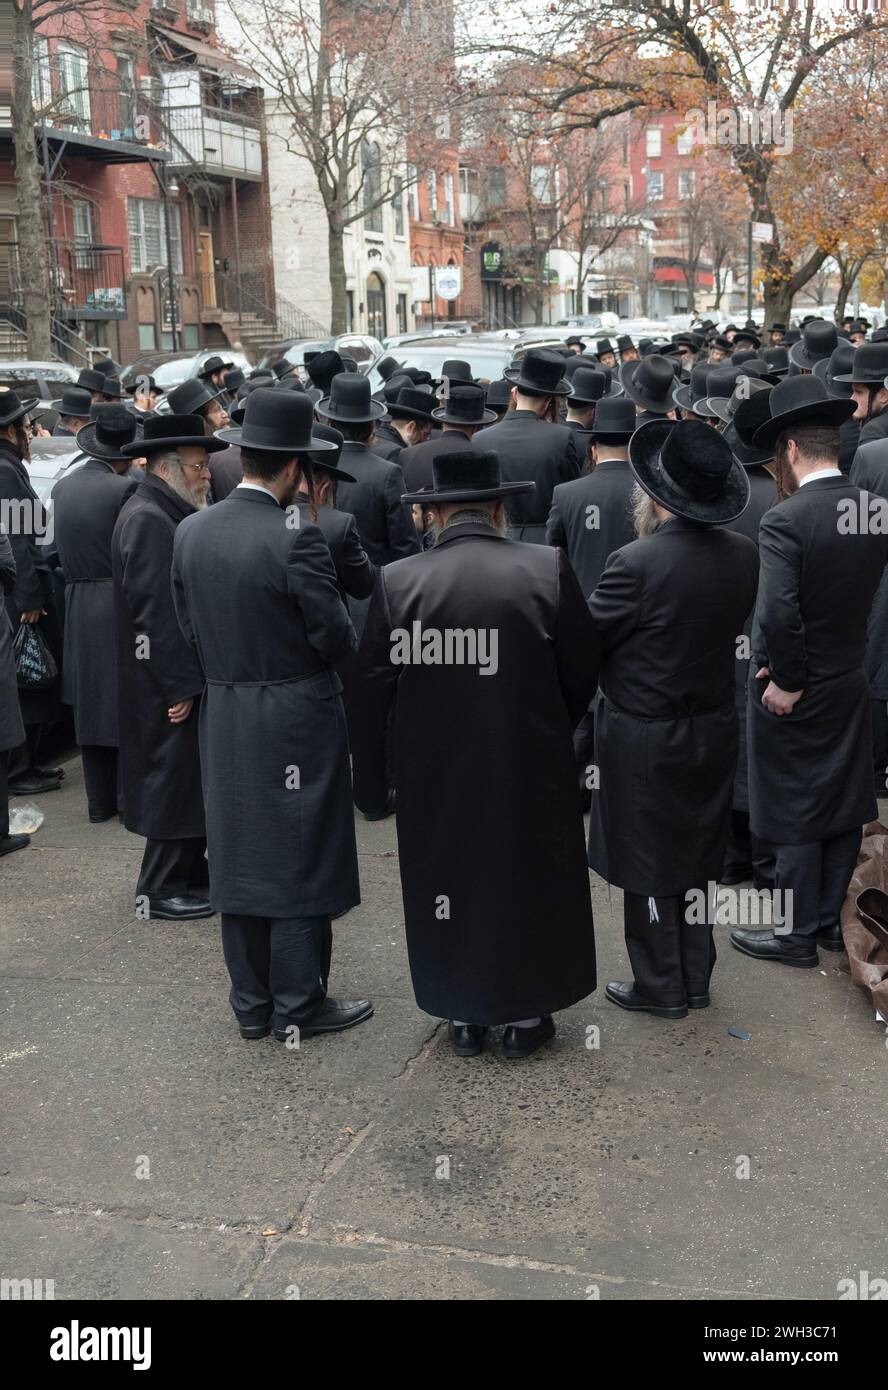 Eine große Gruppe orthodoxer jüdischer Männer, die gleich gekleidet sind, hört eine Rede im Freien. In Brooklyn, New York. Stockfoto